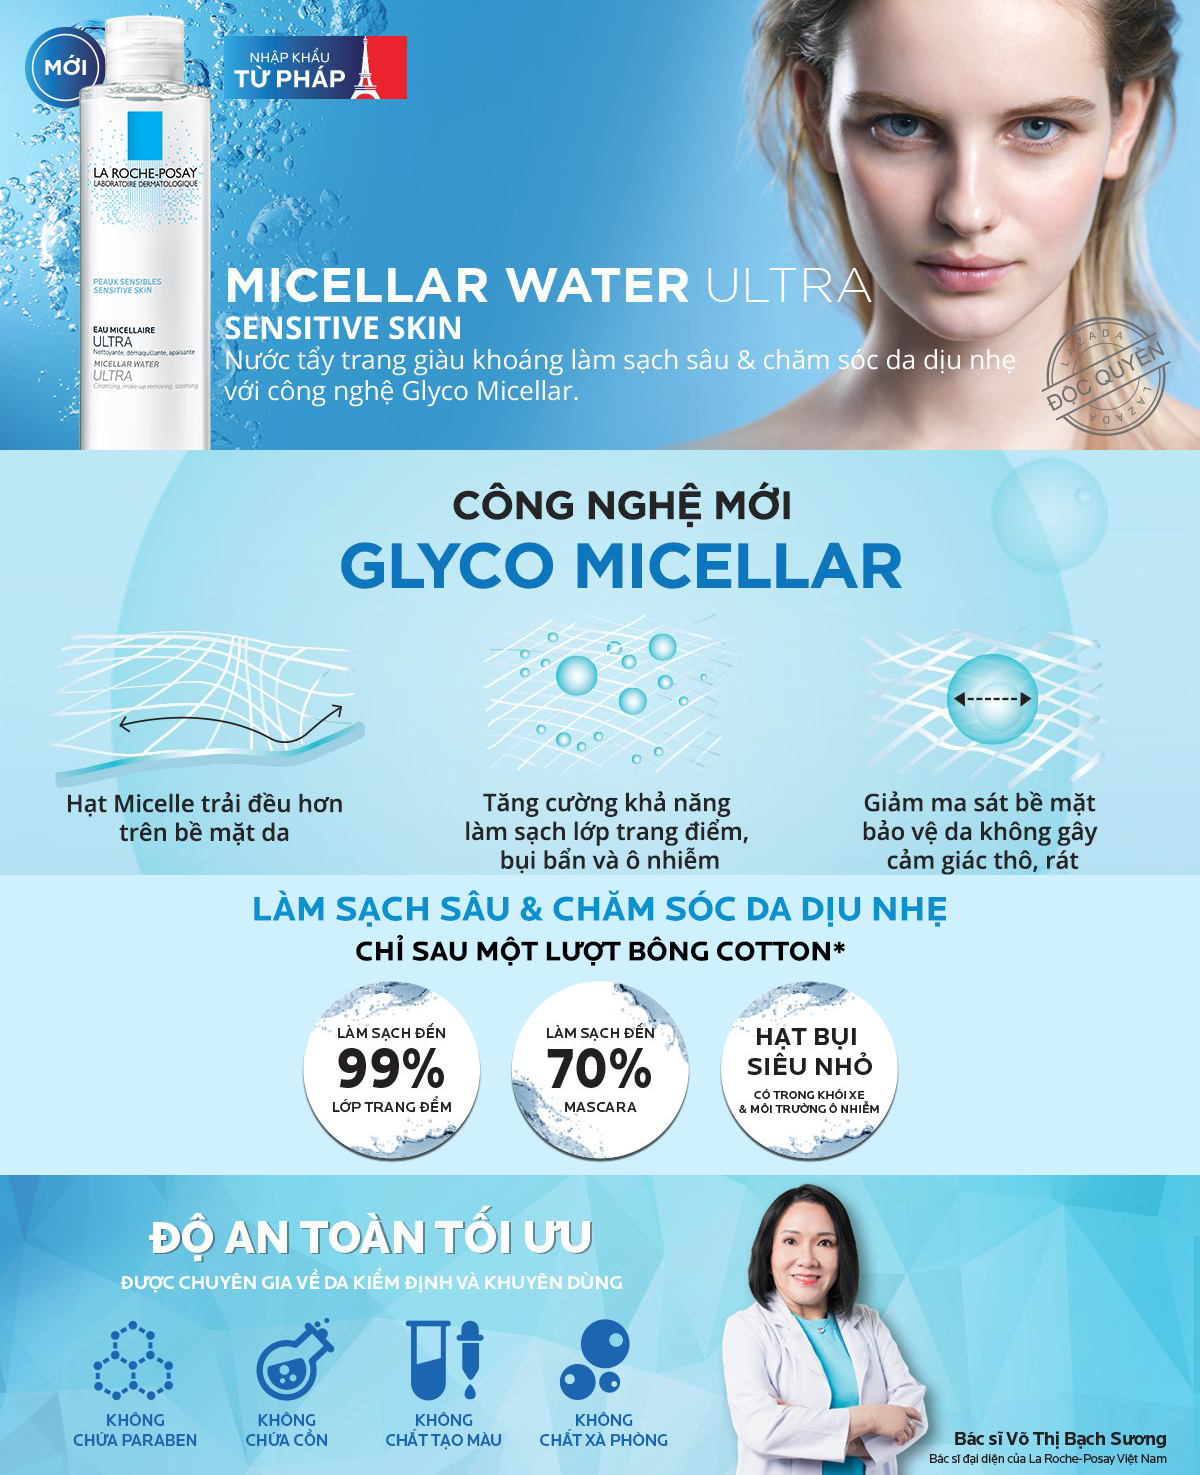 Nước tẩy trang La Roche Posay 400ml với công nghệ cải tiến Glyco Micellar